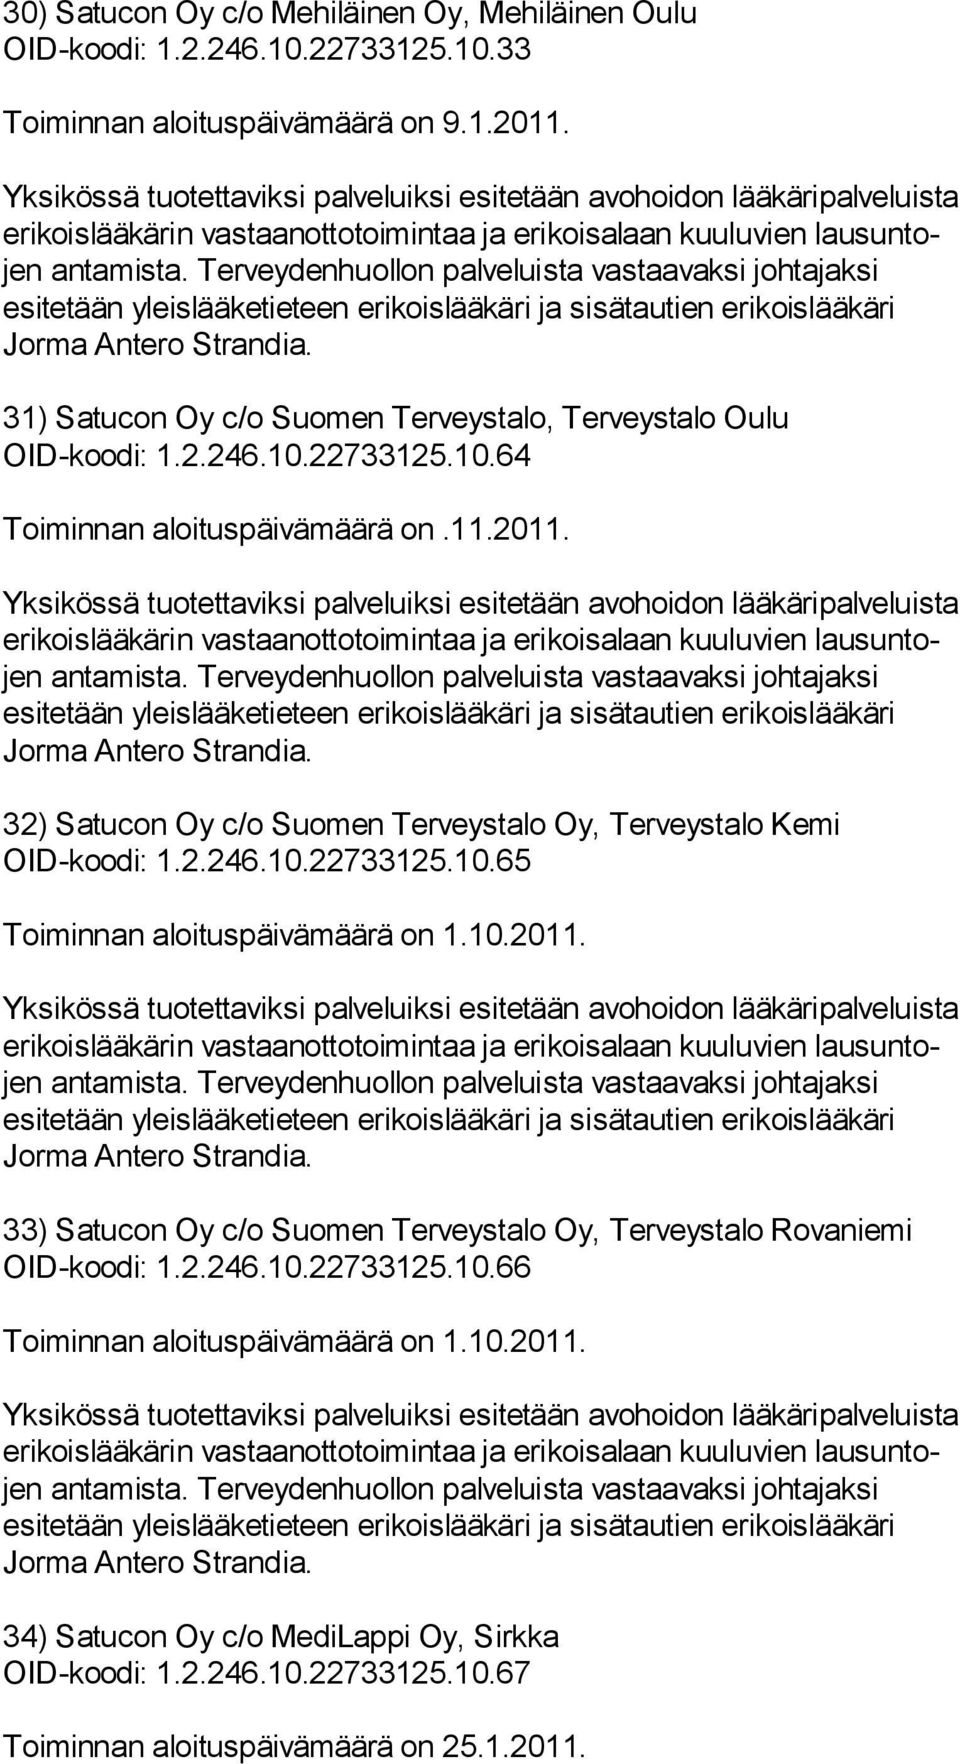 32) Satucon Oy c/o Suomen Terveystalo Oy, Terveystalo Kemi OID-koodi: 1.2.246.10.22733125.10.65 Toiminnan aloituspäivämäärä on 1.10.2011.